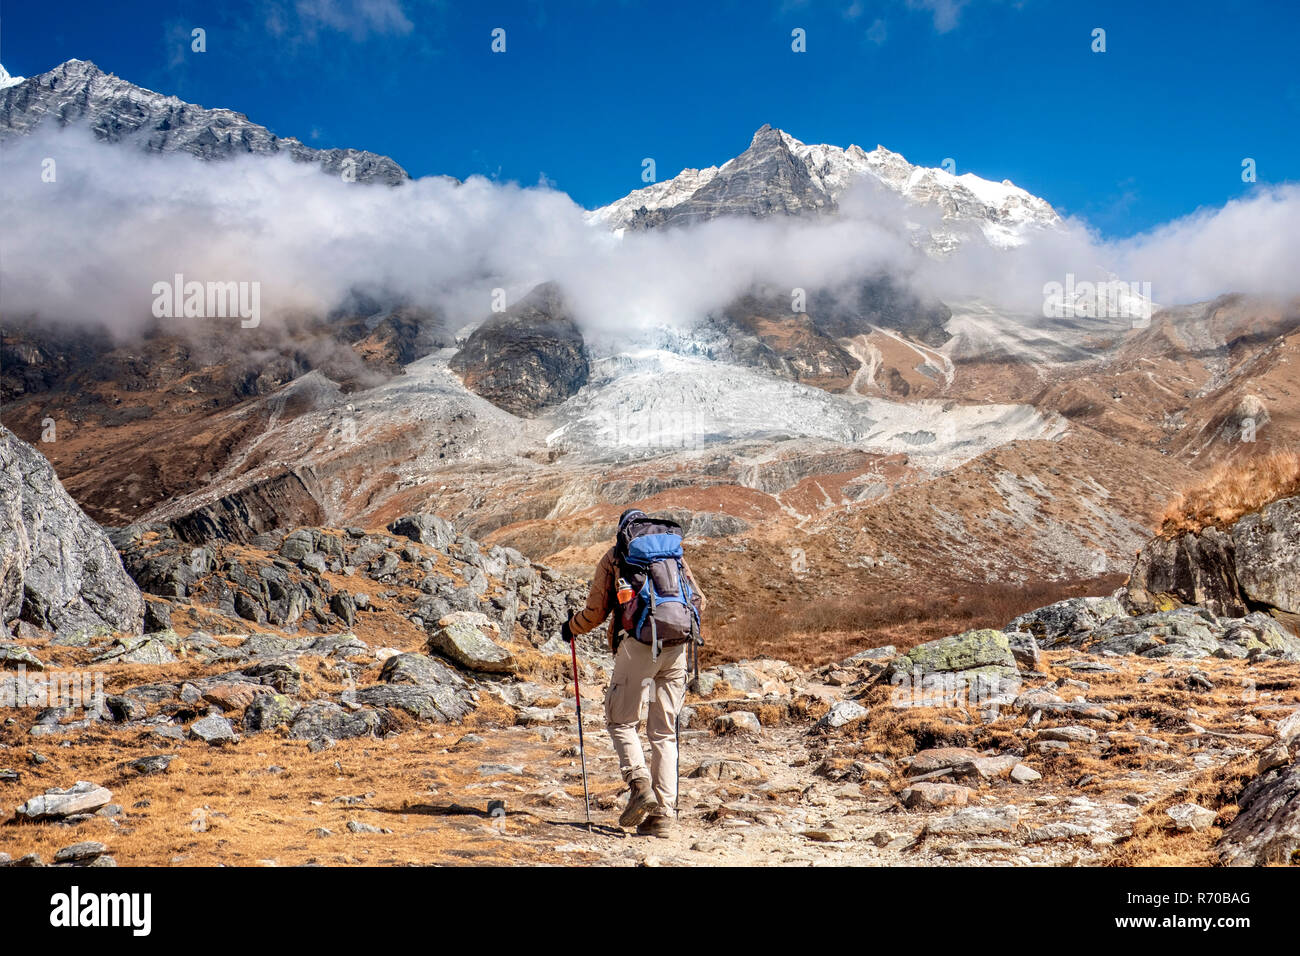 Le Népal, randonneur à la vallée de Langtang Langtang Lirung avec massif de montagne dans l'arrière-plan Banque D'Images